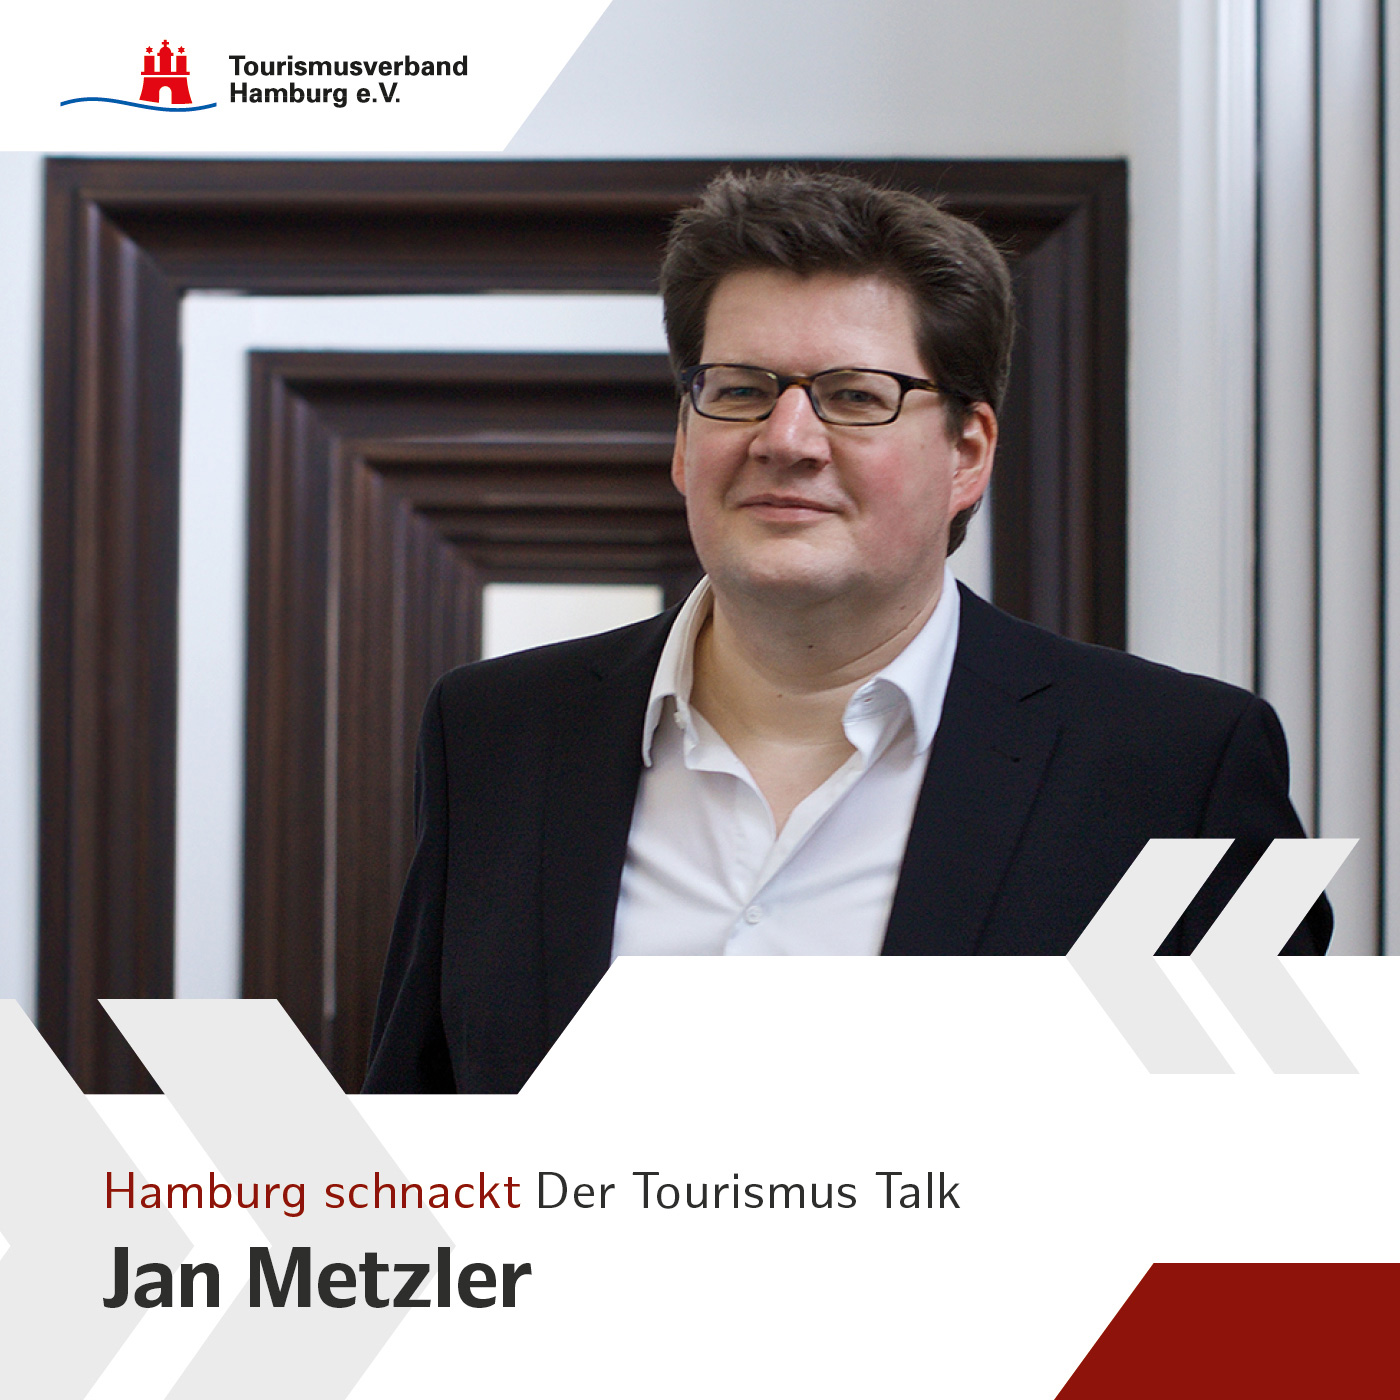 Hamburg schnackt mit Dr. Jan Metzler